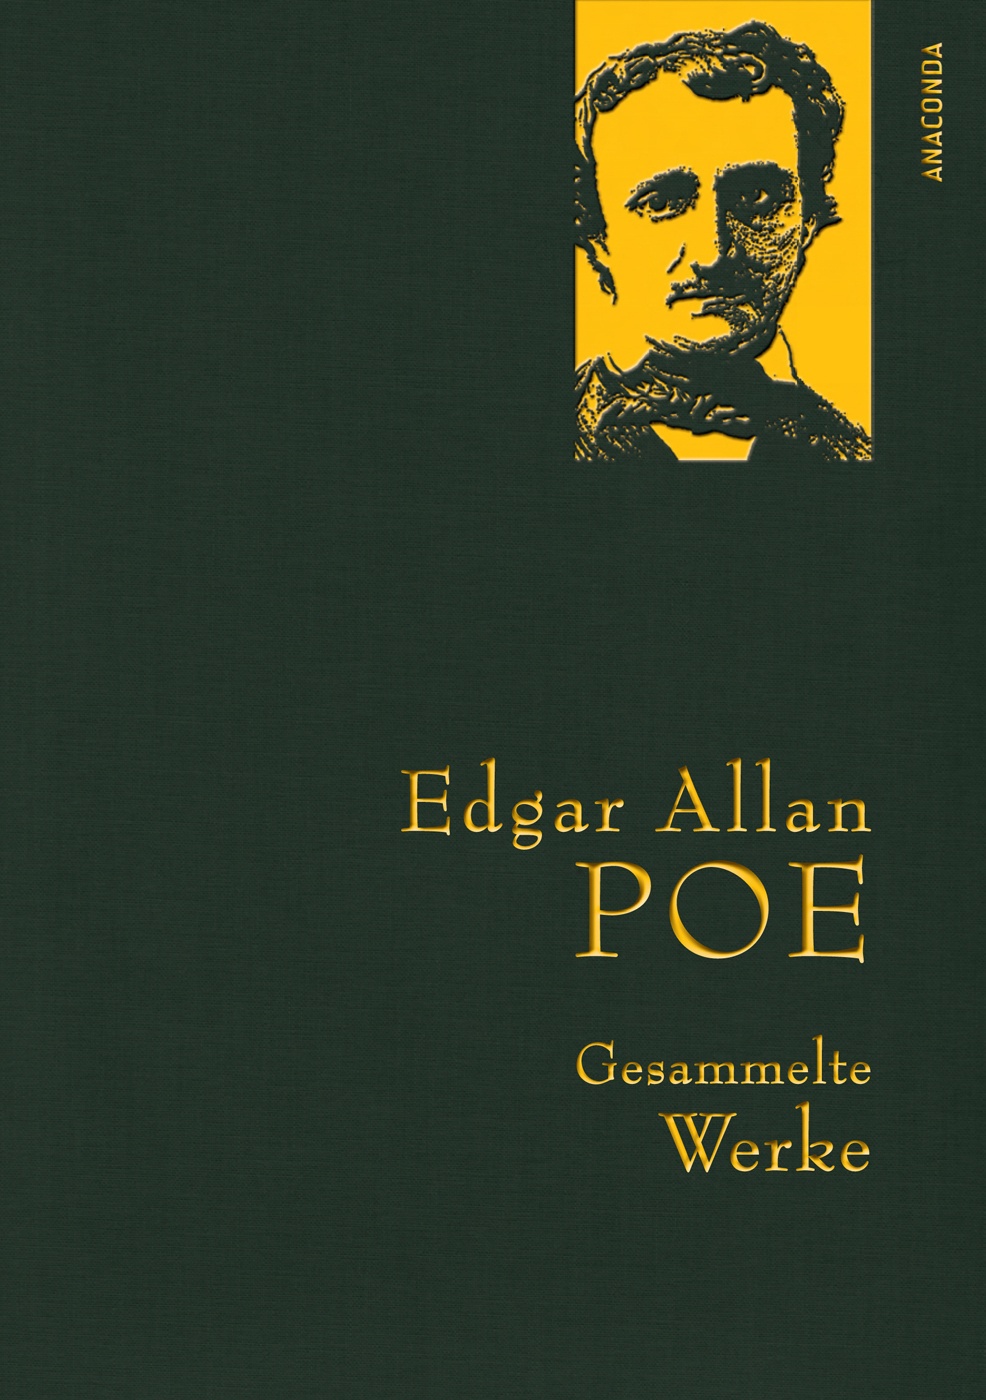 Edgar Allan Poe  Gesammelte Werke - Edgar Allan Poe  Leinen